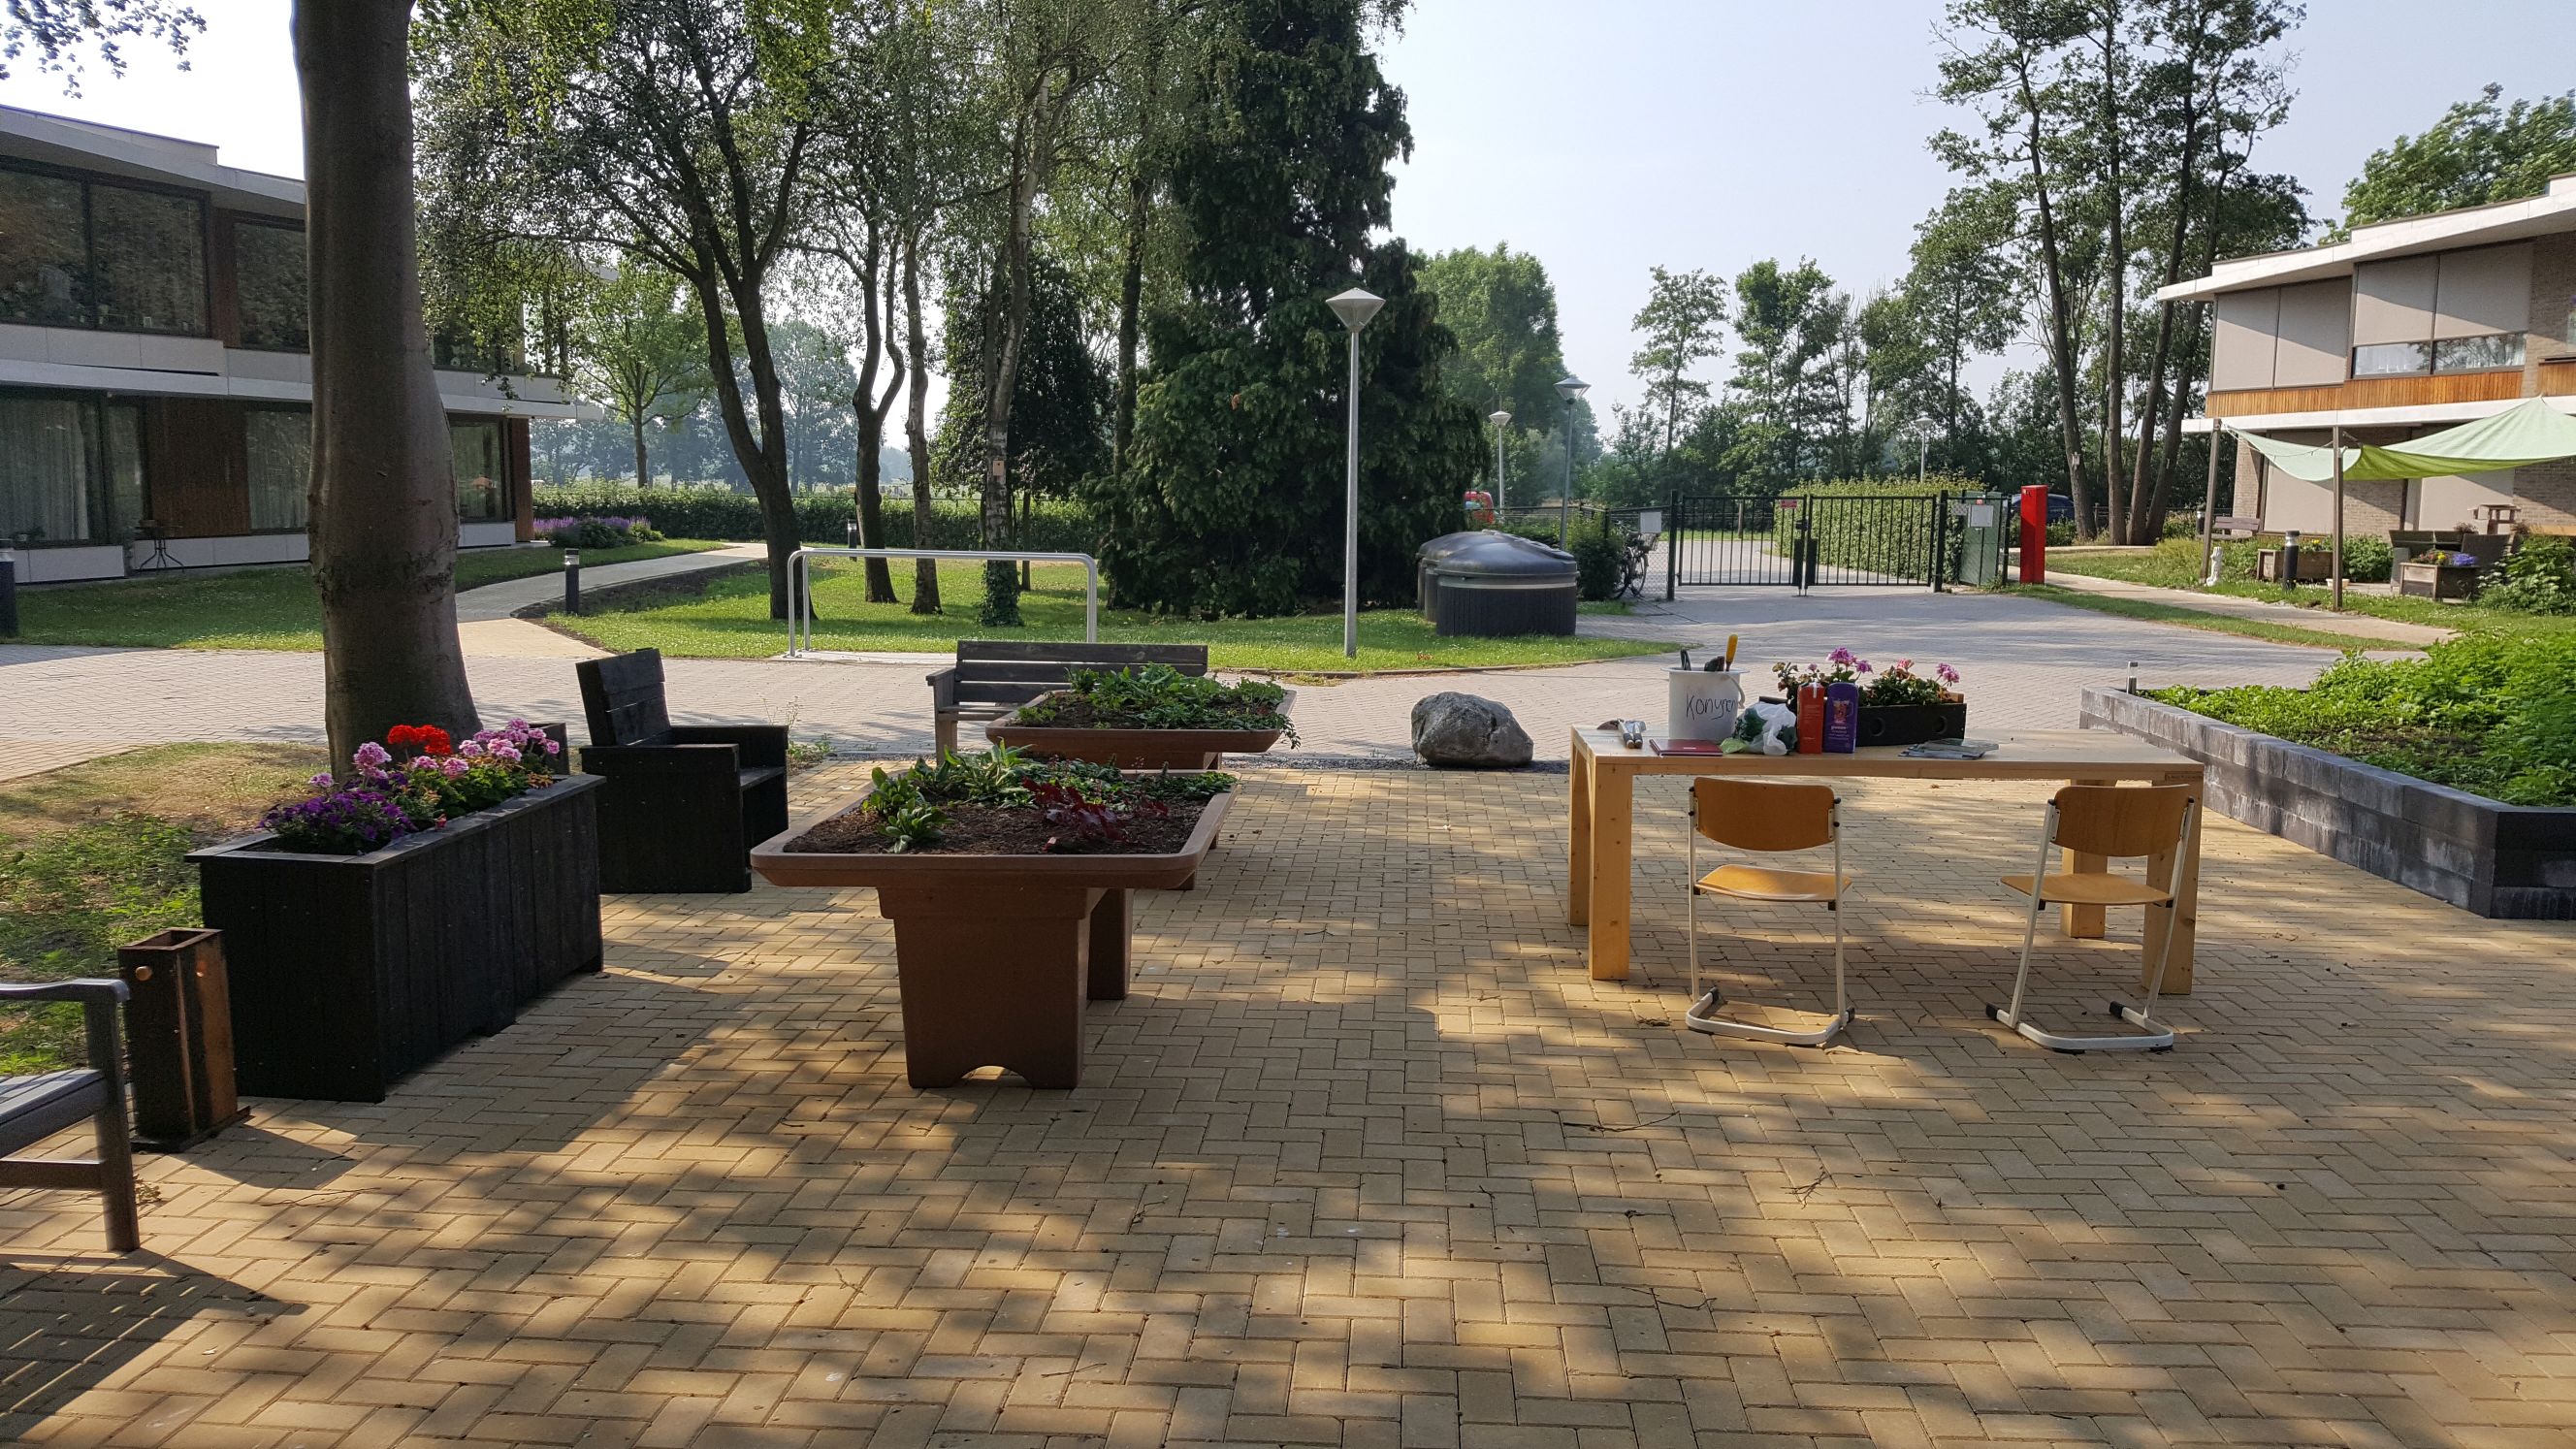 Buiten bij de Schiphorst, een tafel met planten, bomen, gras, bestrating